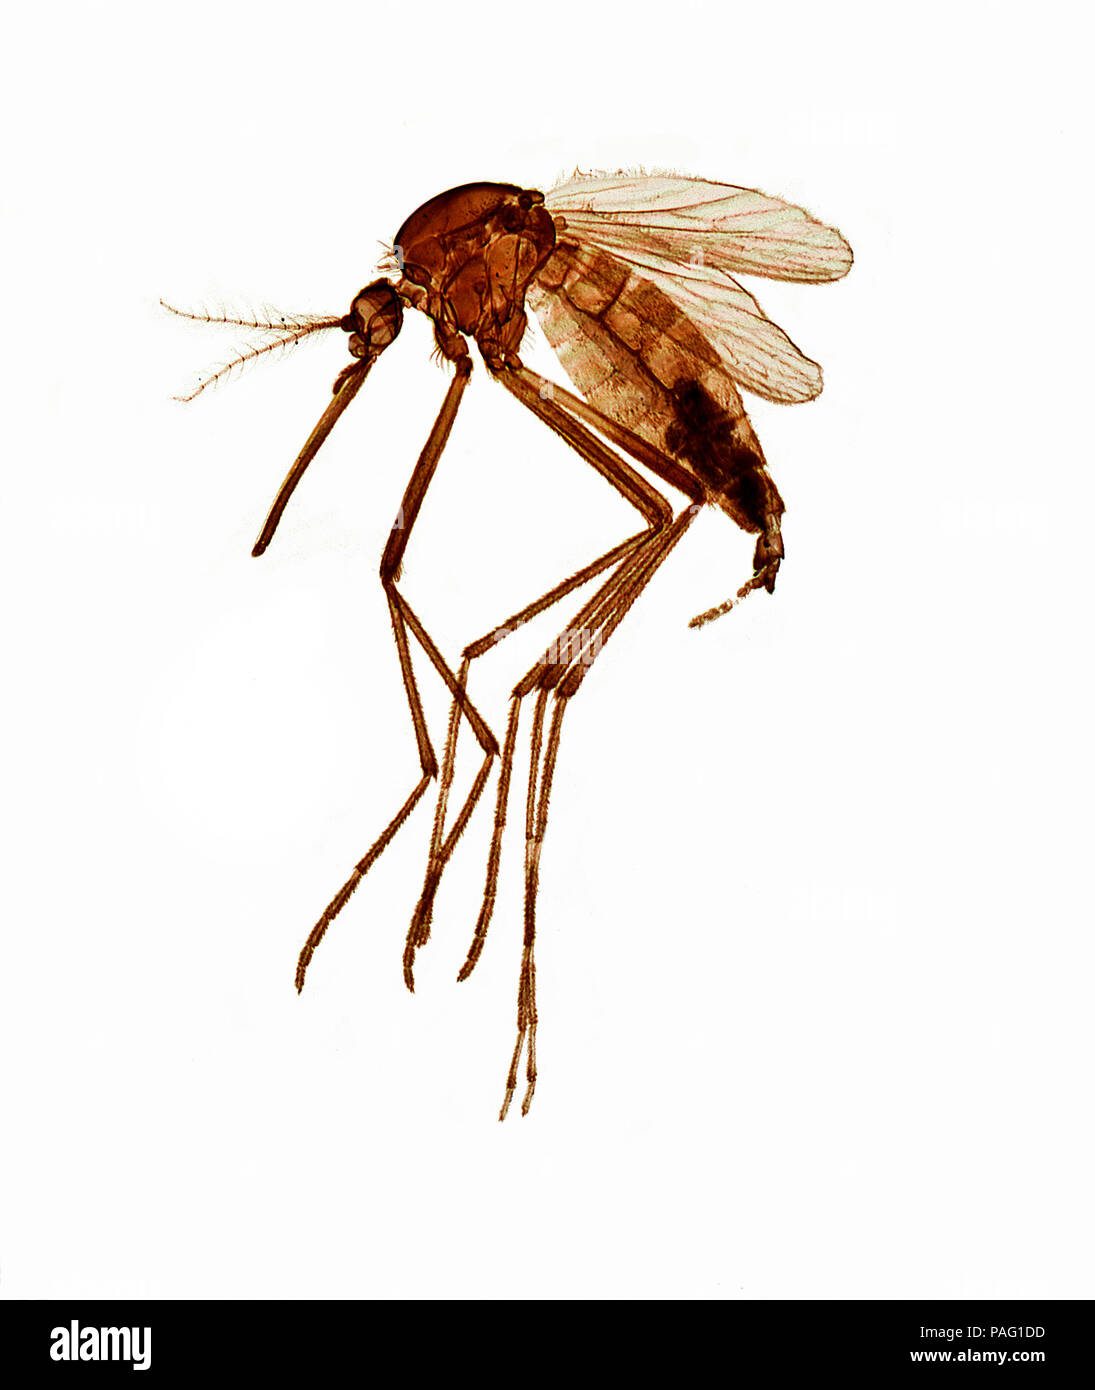 Aedes aegypti, la febbre gialla zanzara, è una zanzara che si può diffondere la febbre dengue, chikungunya, Zika febbre, Mayaro e febbre gialla virus e ot Foto Stock